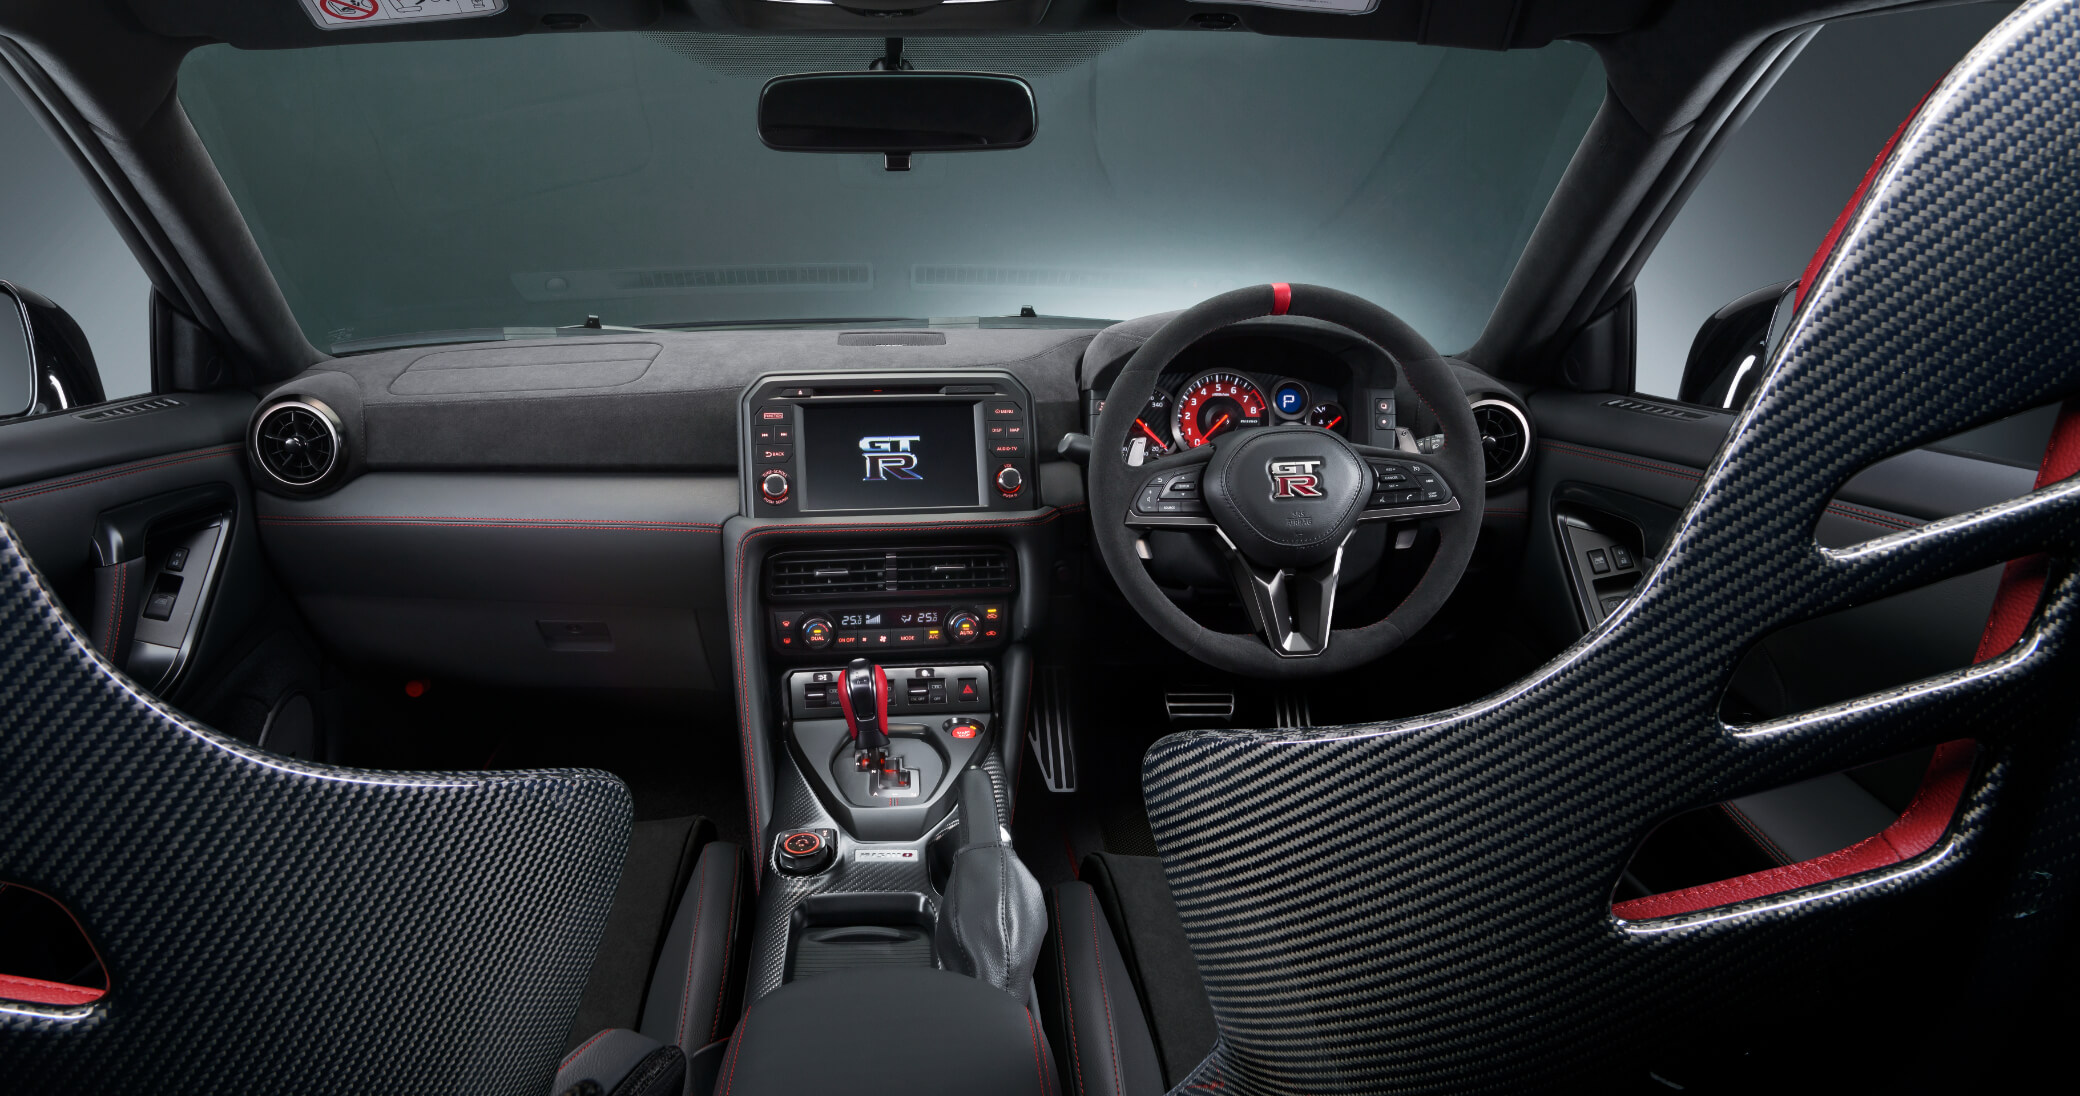 Nissan GT-R Nismo Special Edition interior